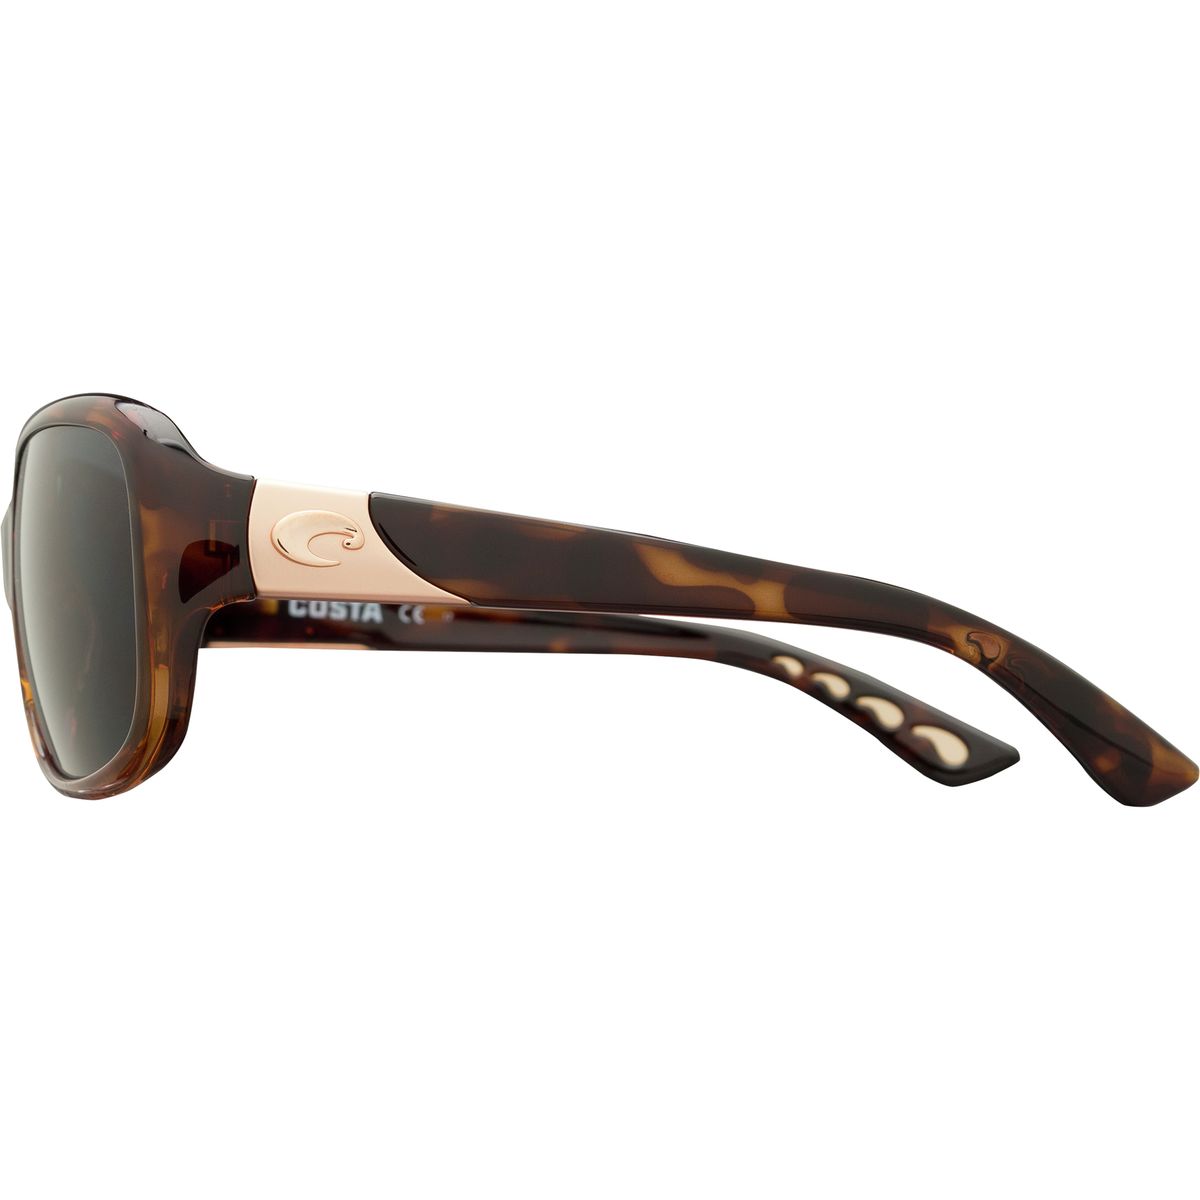 Поляризованные солнцезащитные очки Costa Gannet 580P Costa